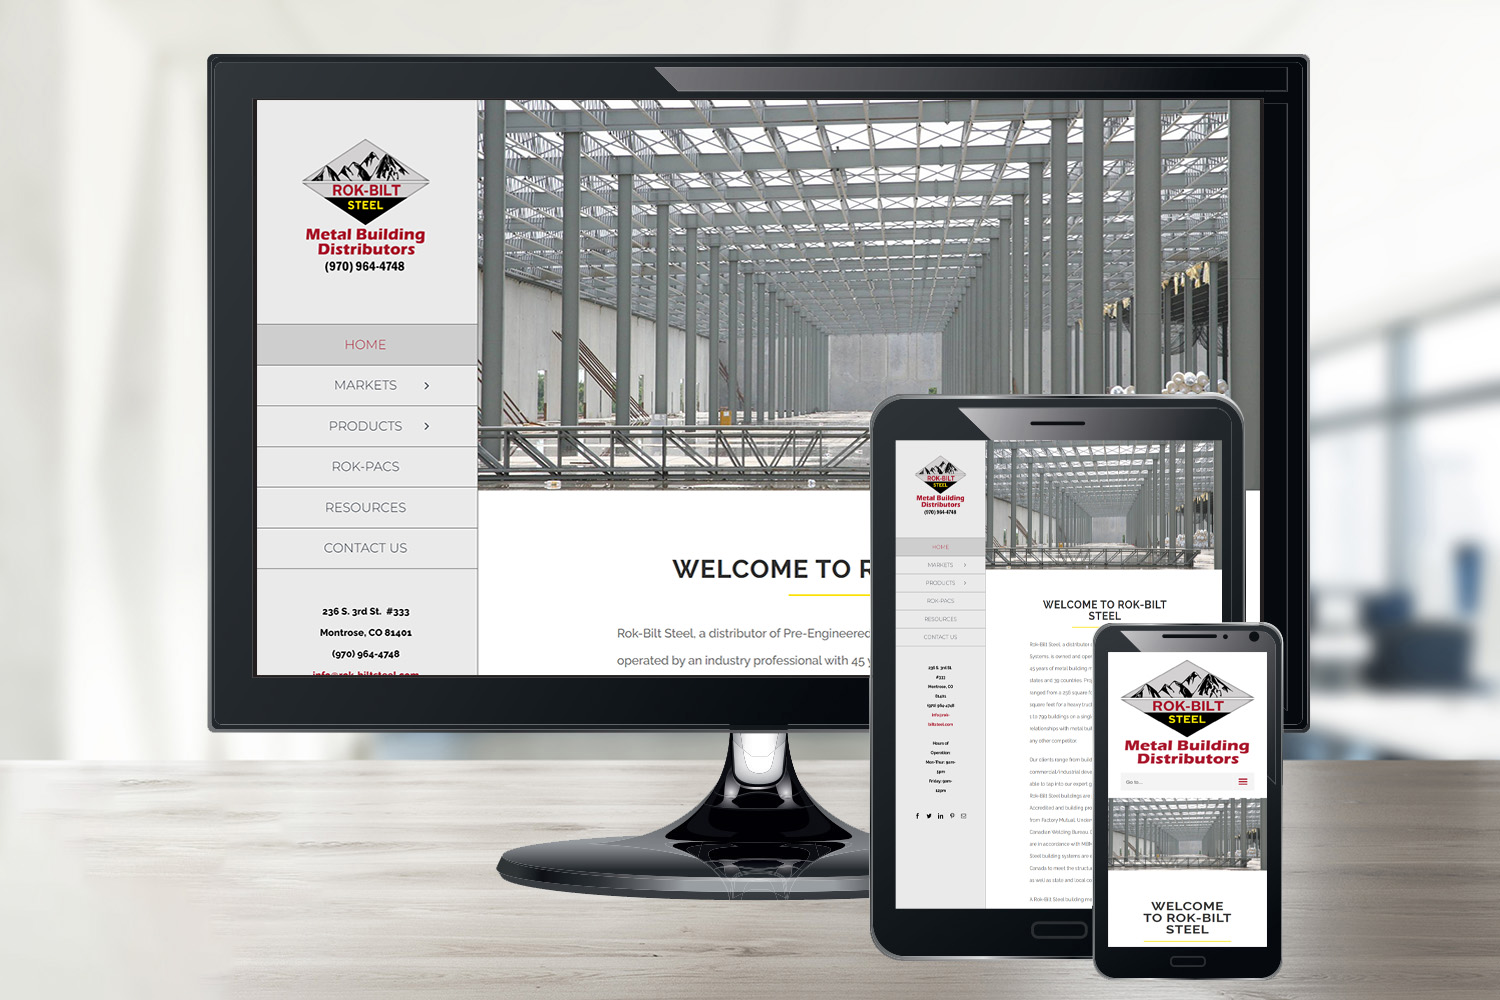 A responsive view of Rok-Bilt Steel's website design